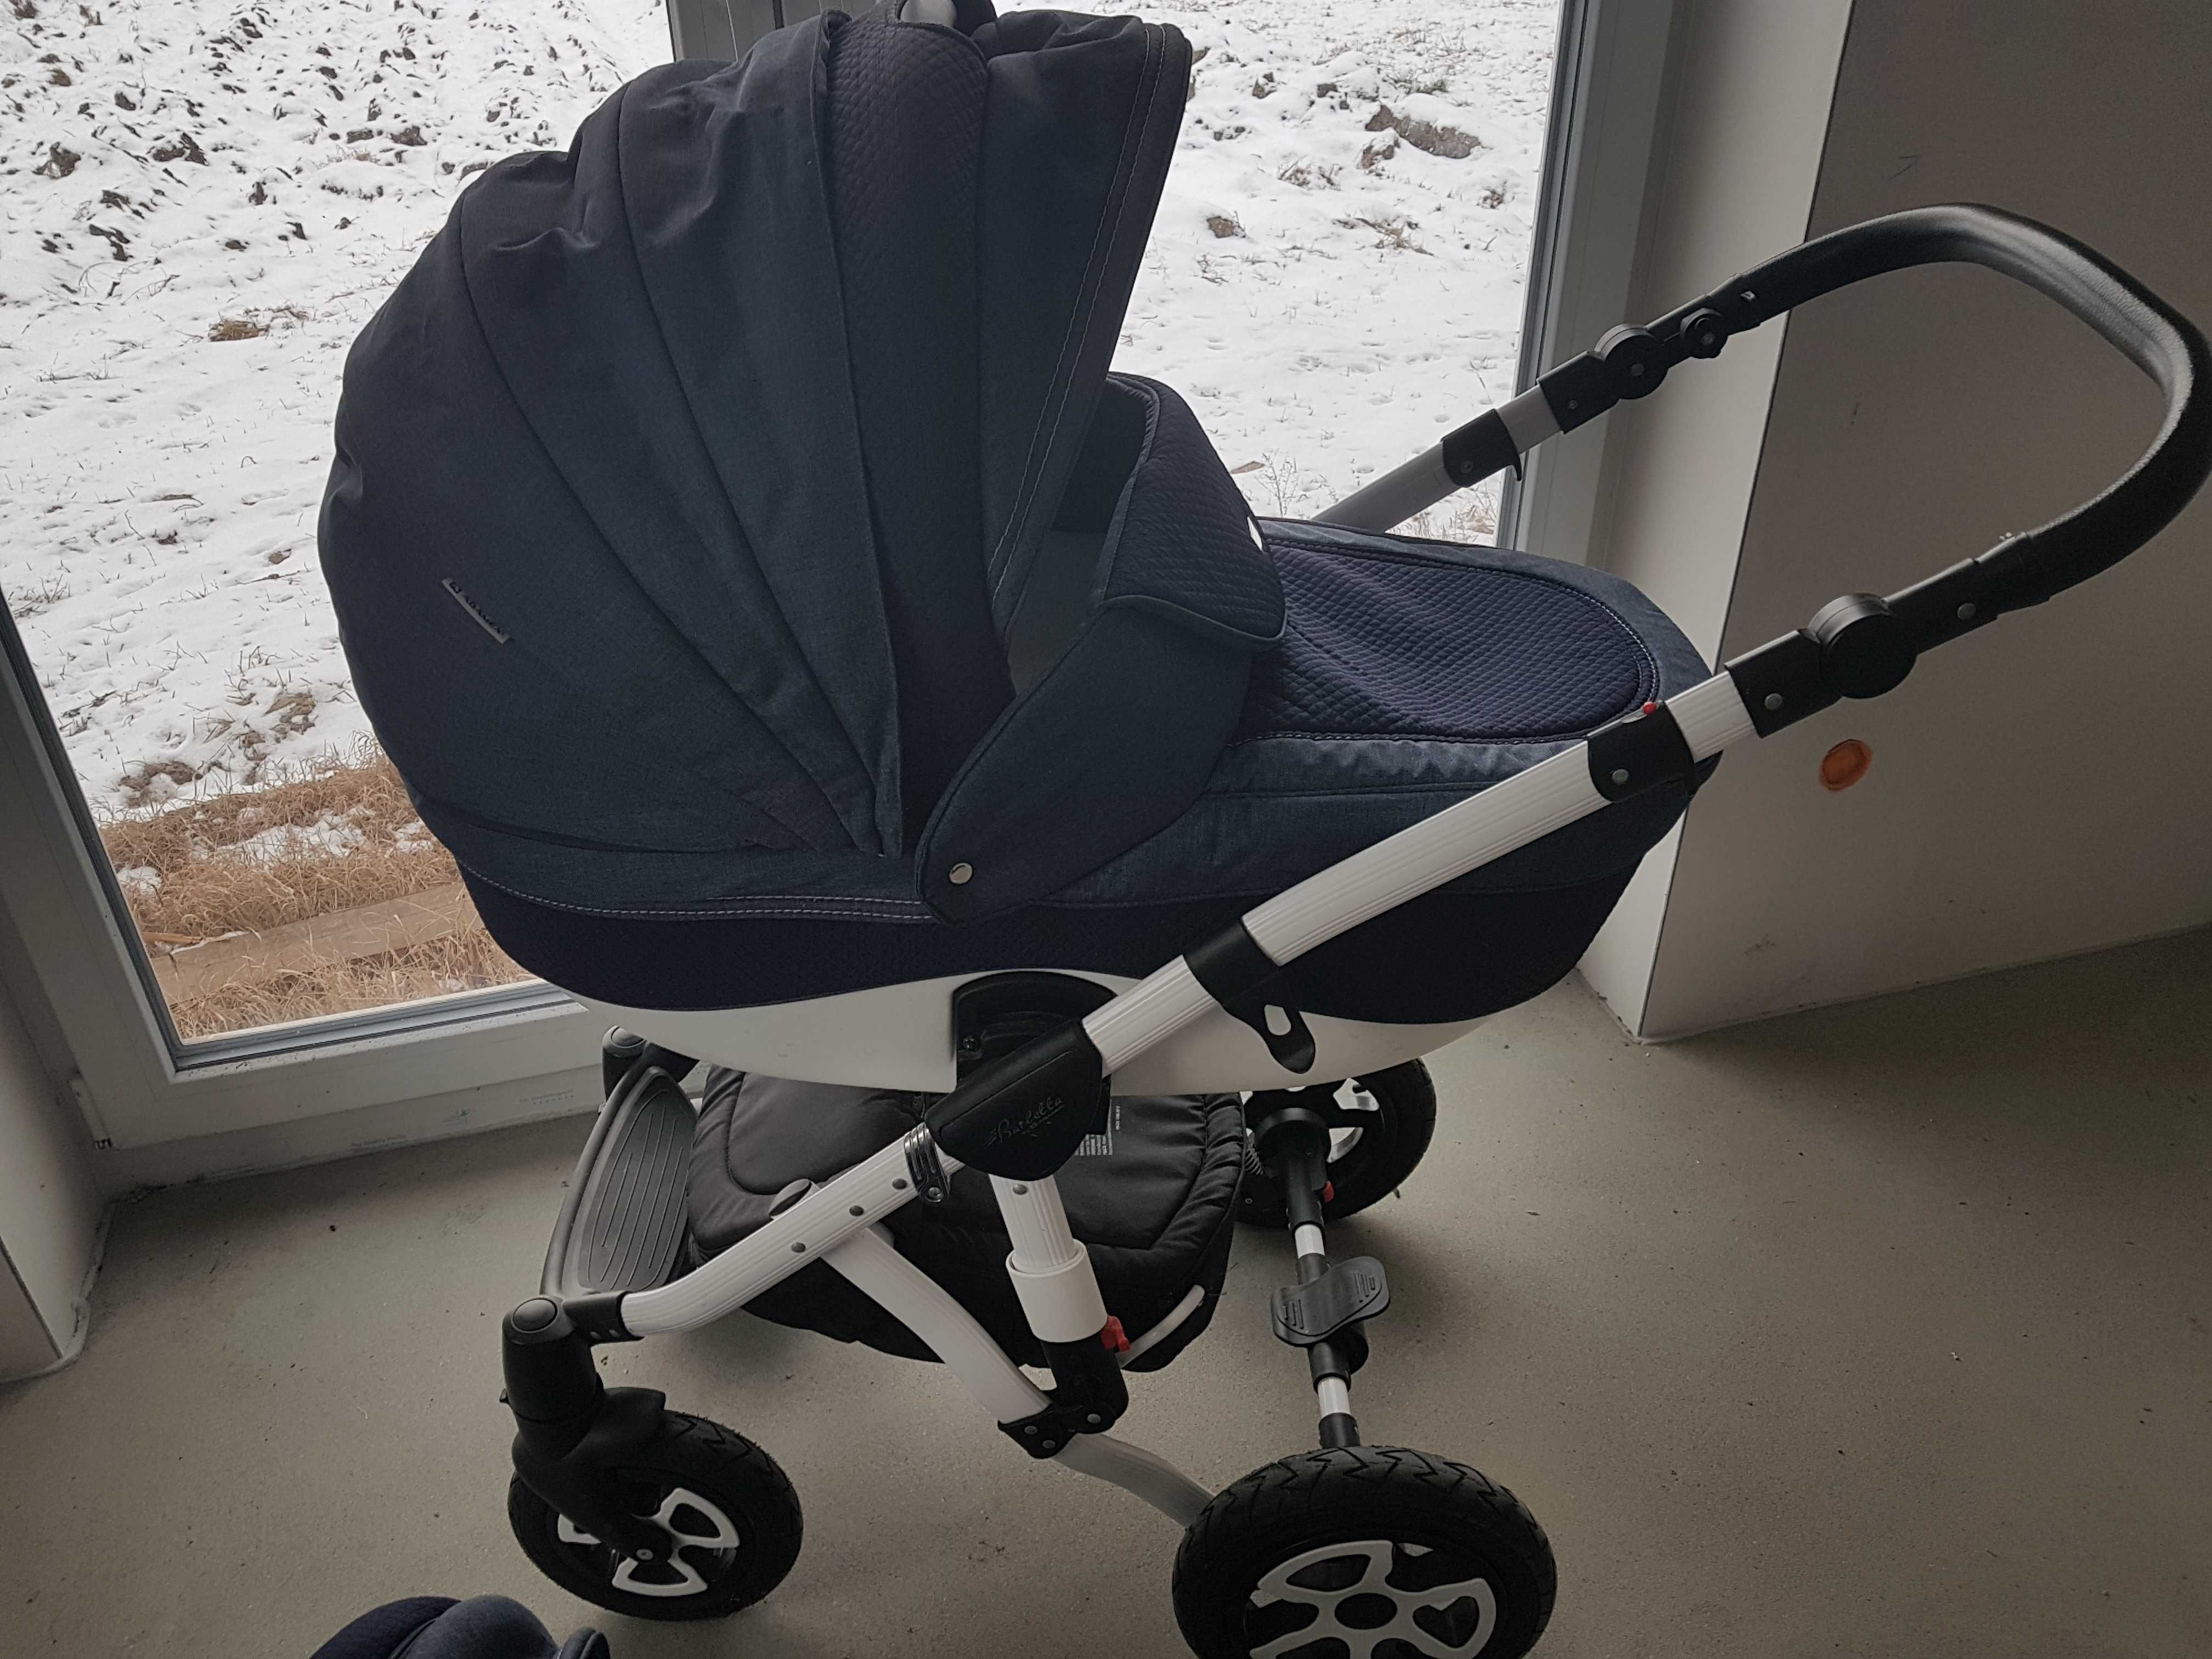 Wózek dla dziecka Adamex Barletta 2 w 1 spacerówka nowa nie używana